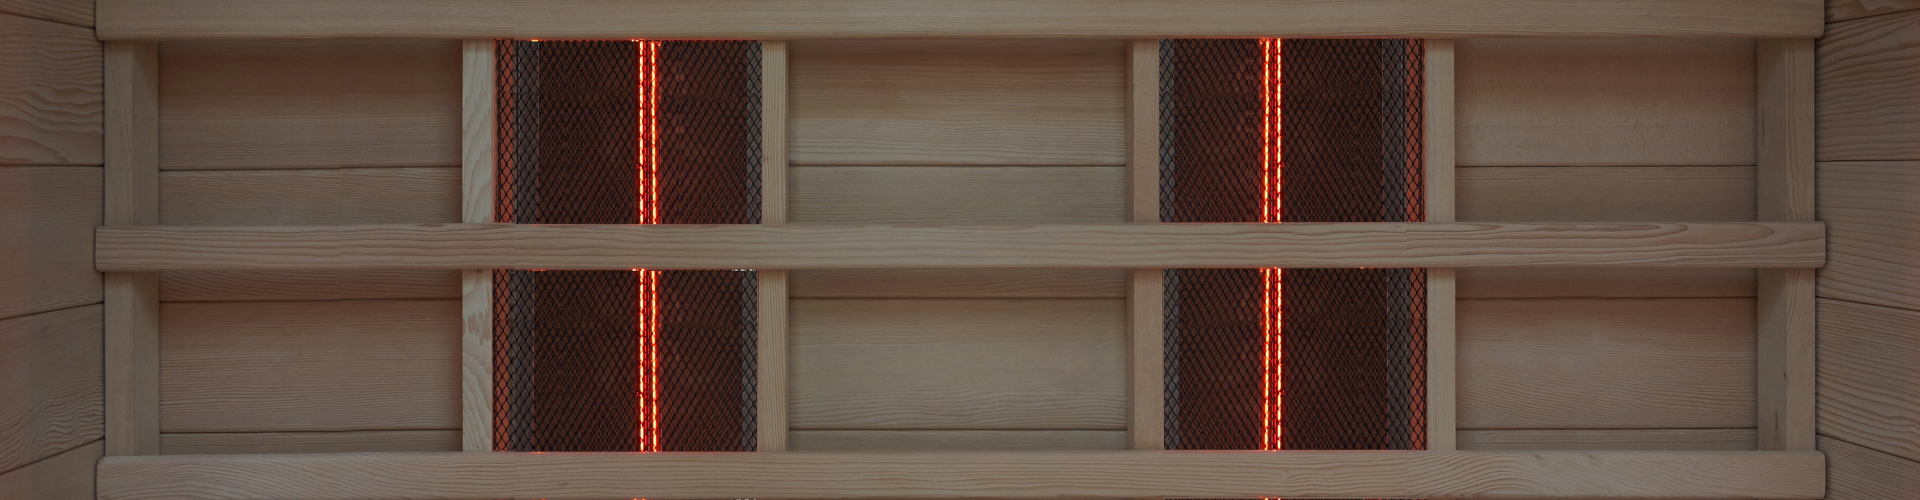 Interline Infrarood sauna's | Op prijs/kwaliteit nummer 1